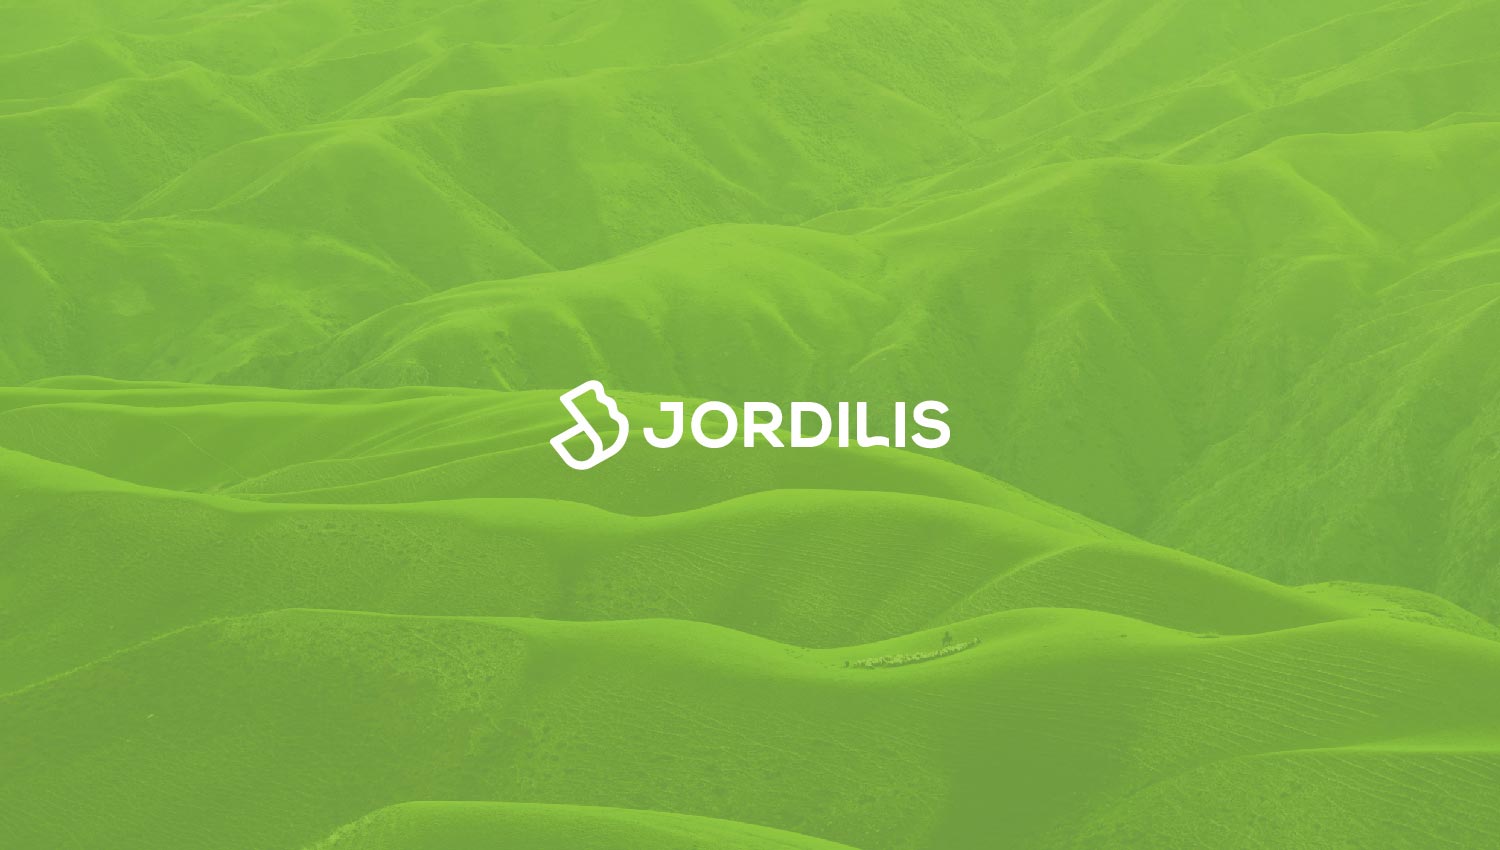 jordilis2_low